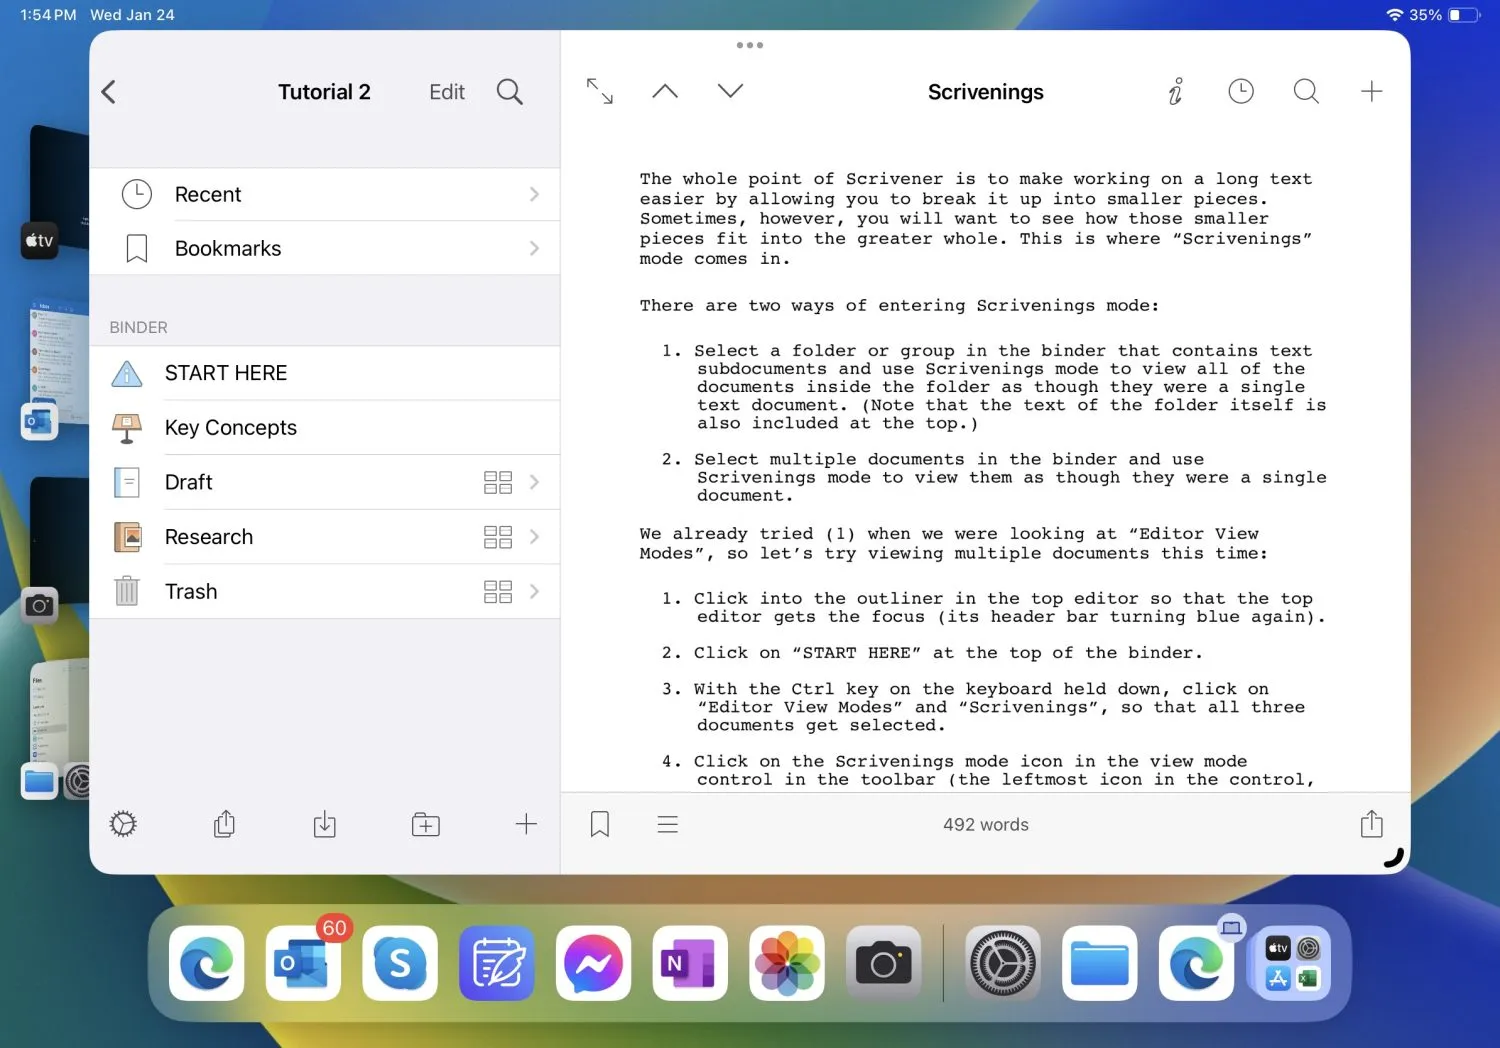 Снимок экрана iPad Pro 11, показывающий приложение Scrivener